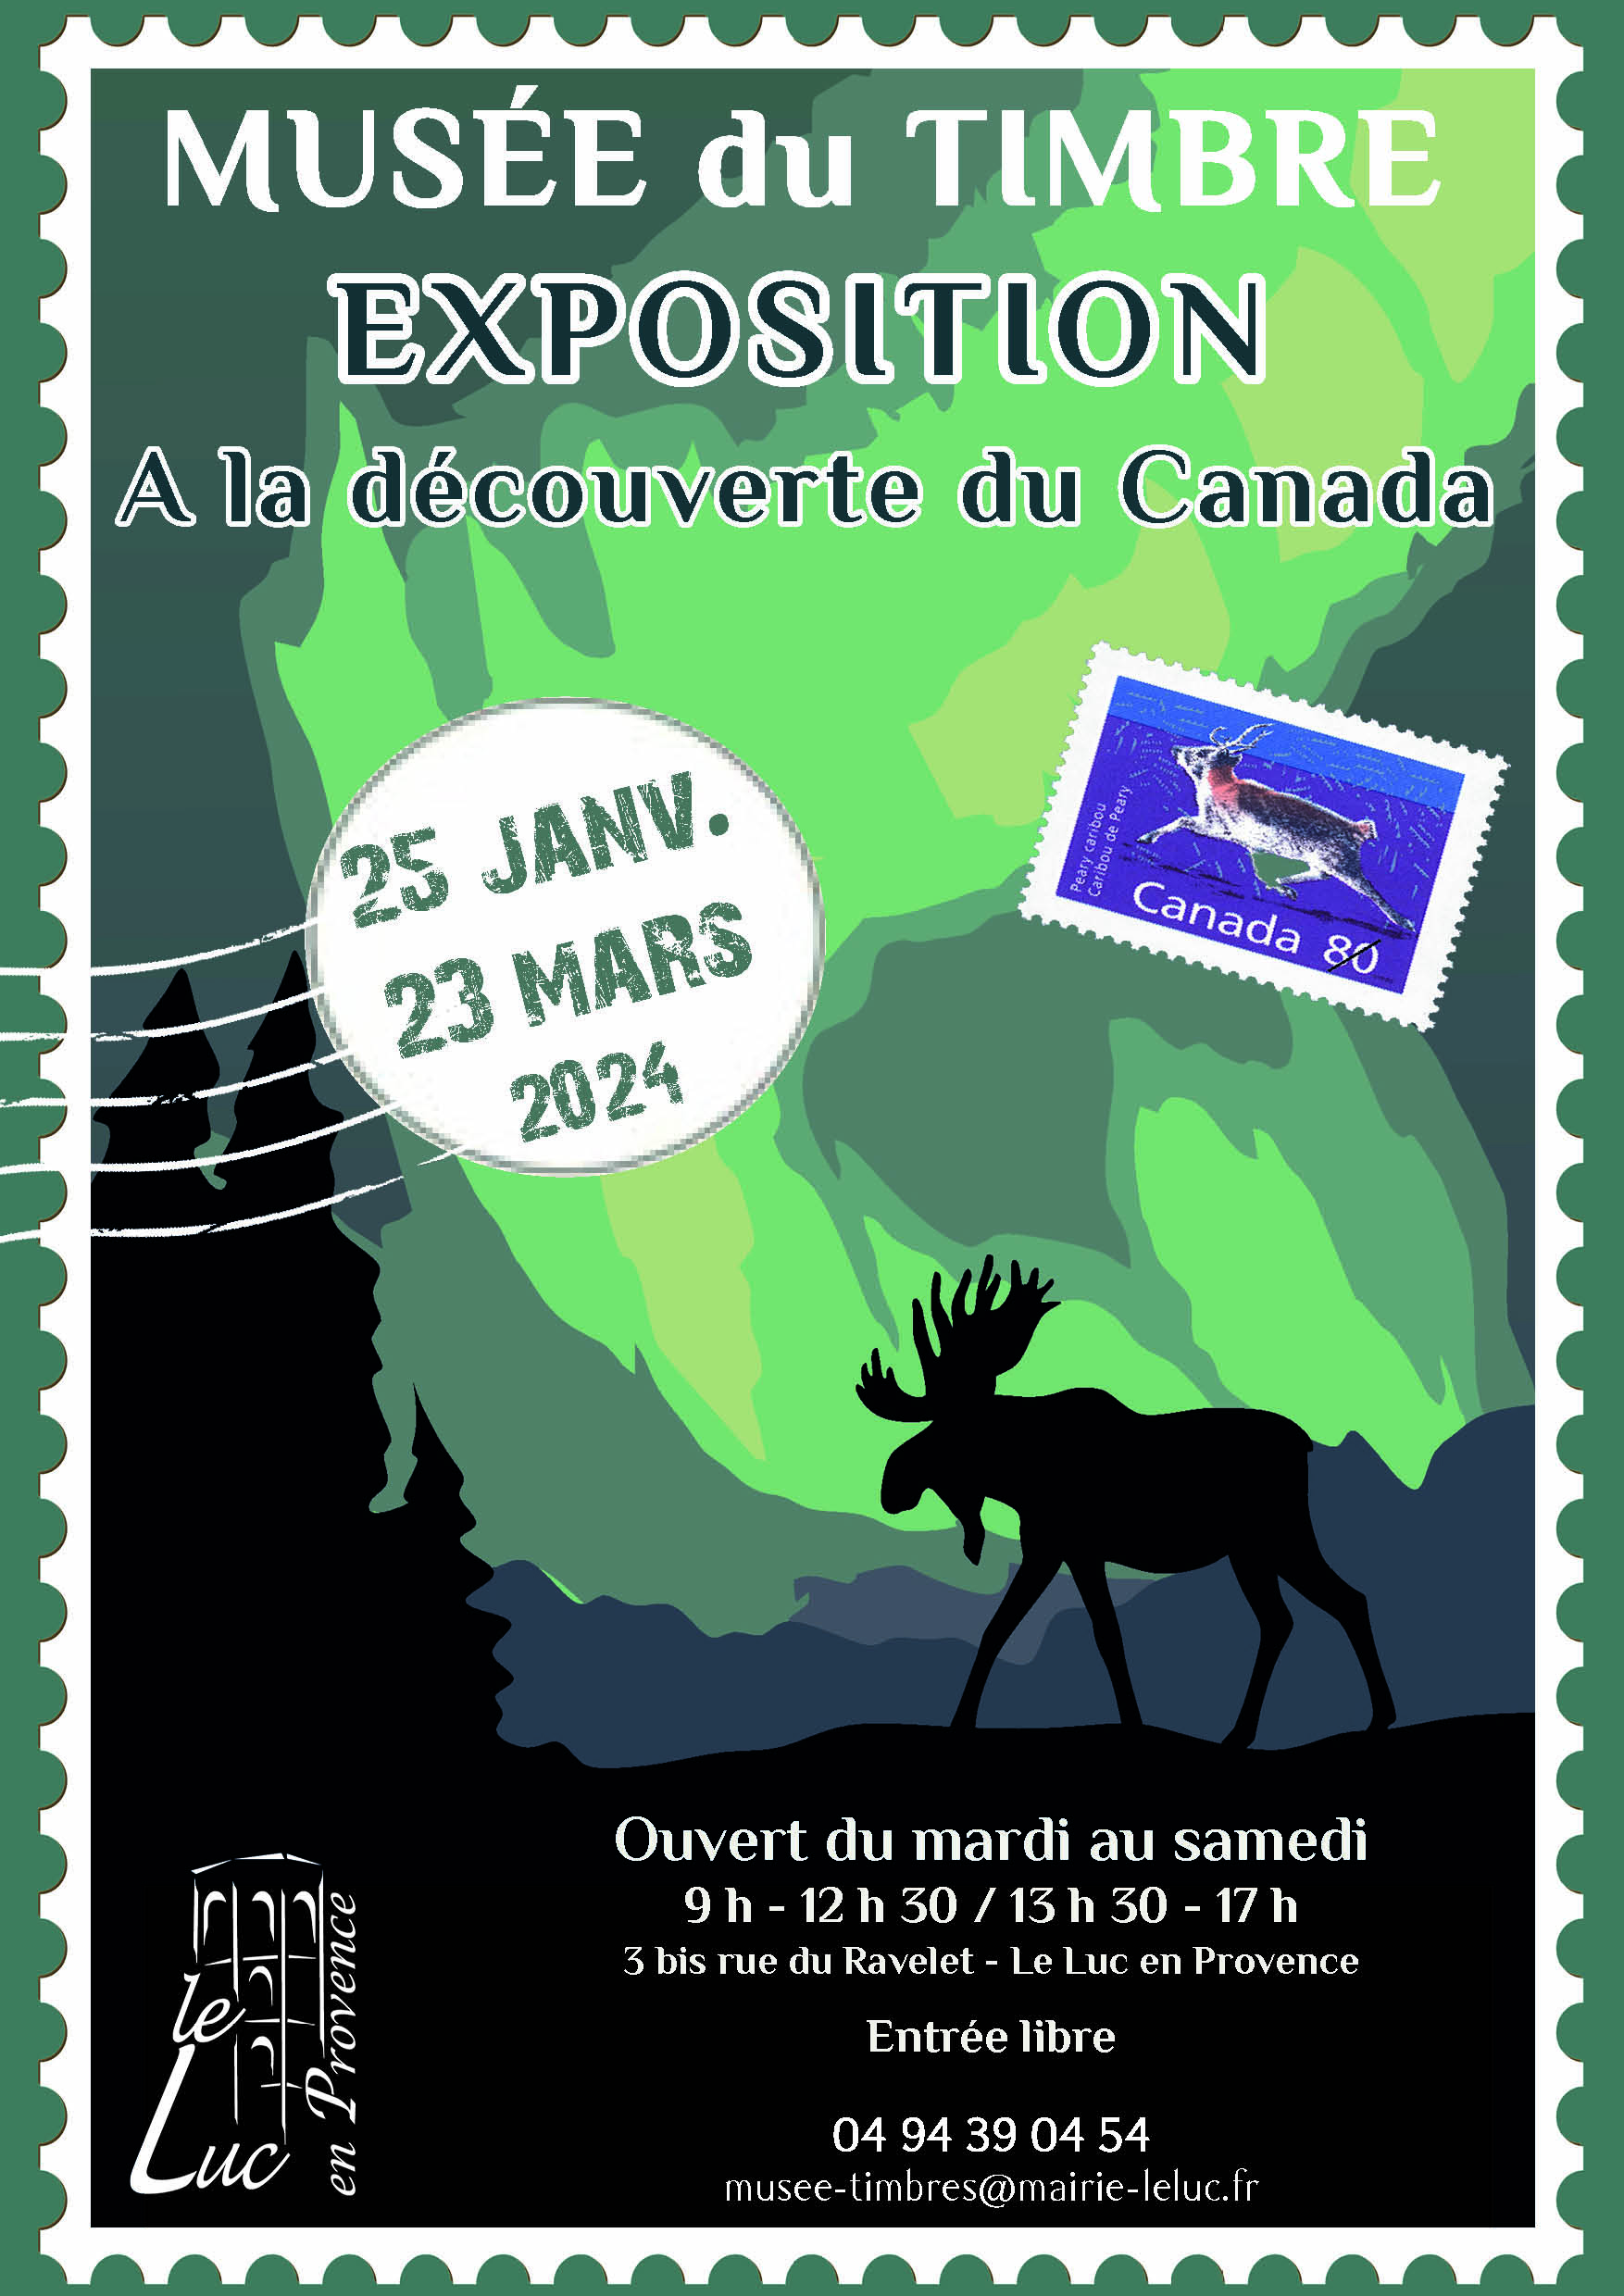 Jusqu’au 23 mars – Exposition de timbre “À la découverte du Canada”